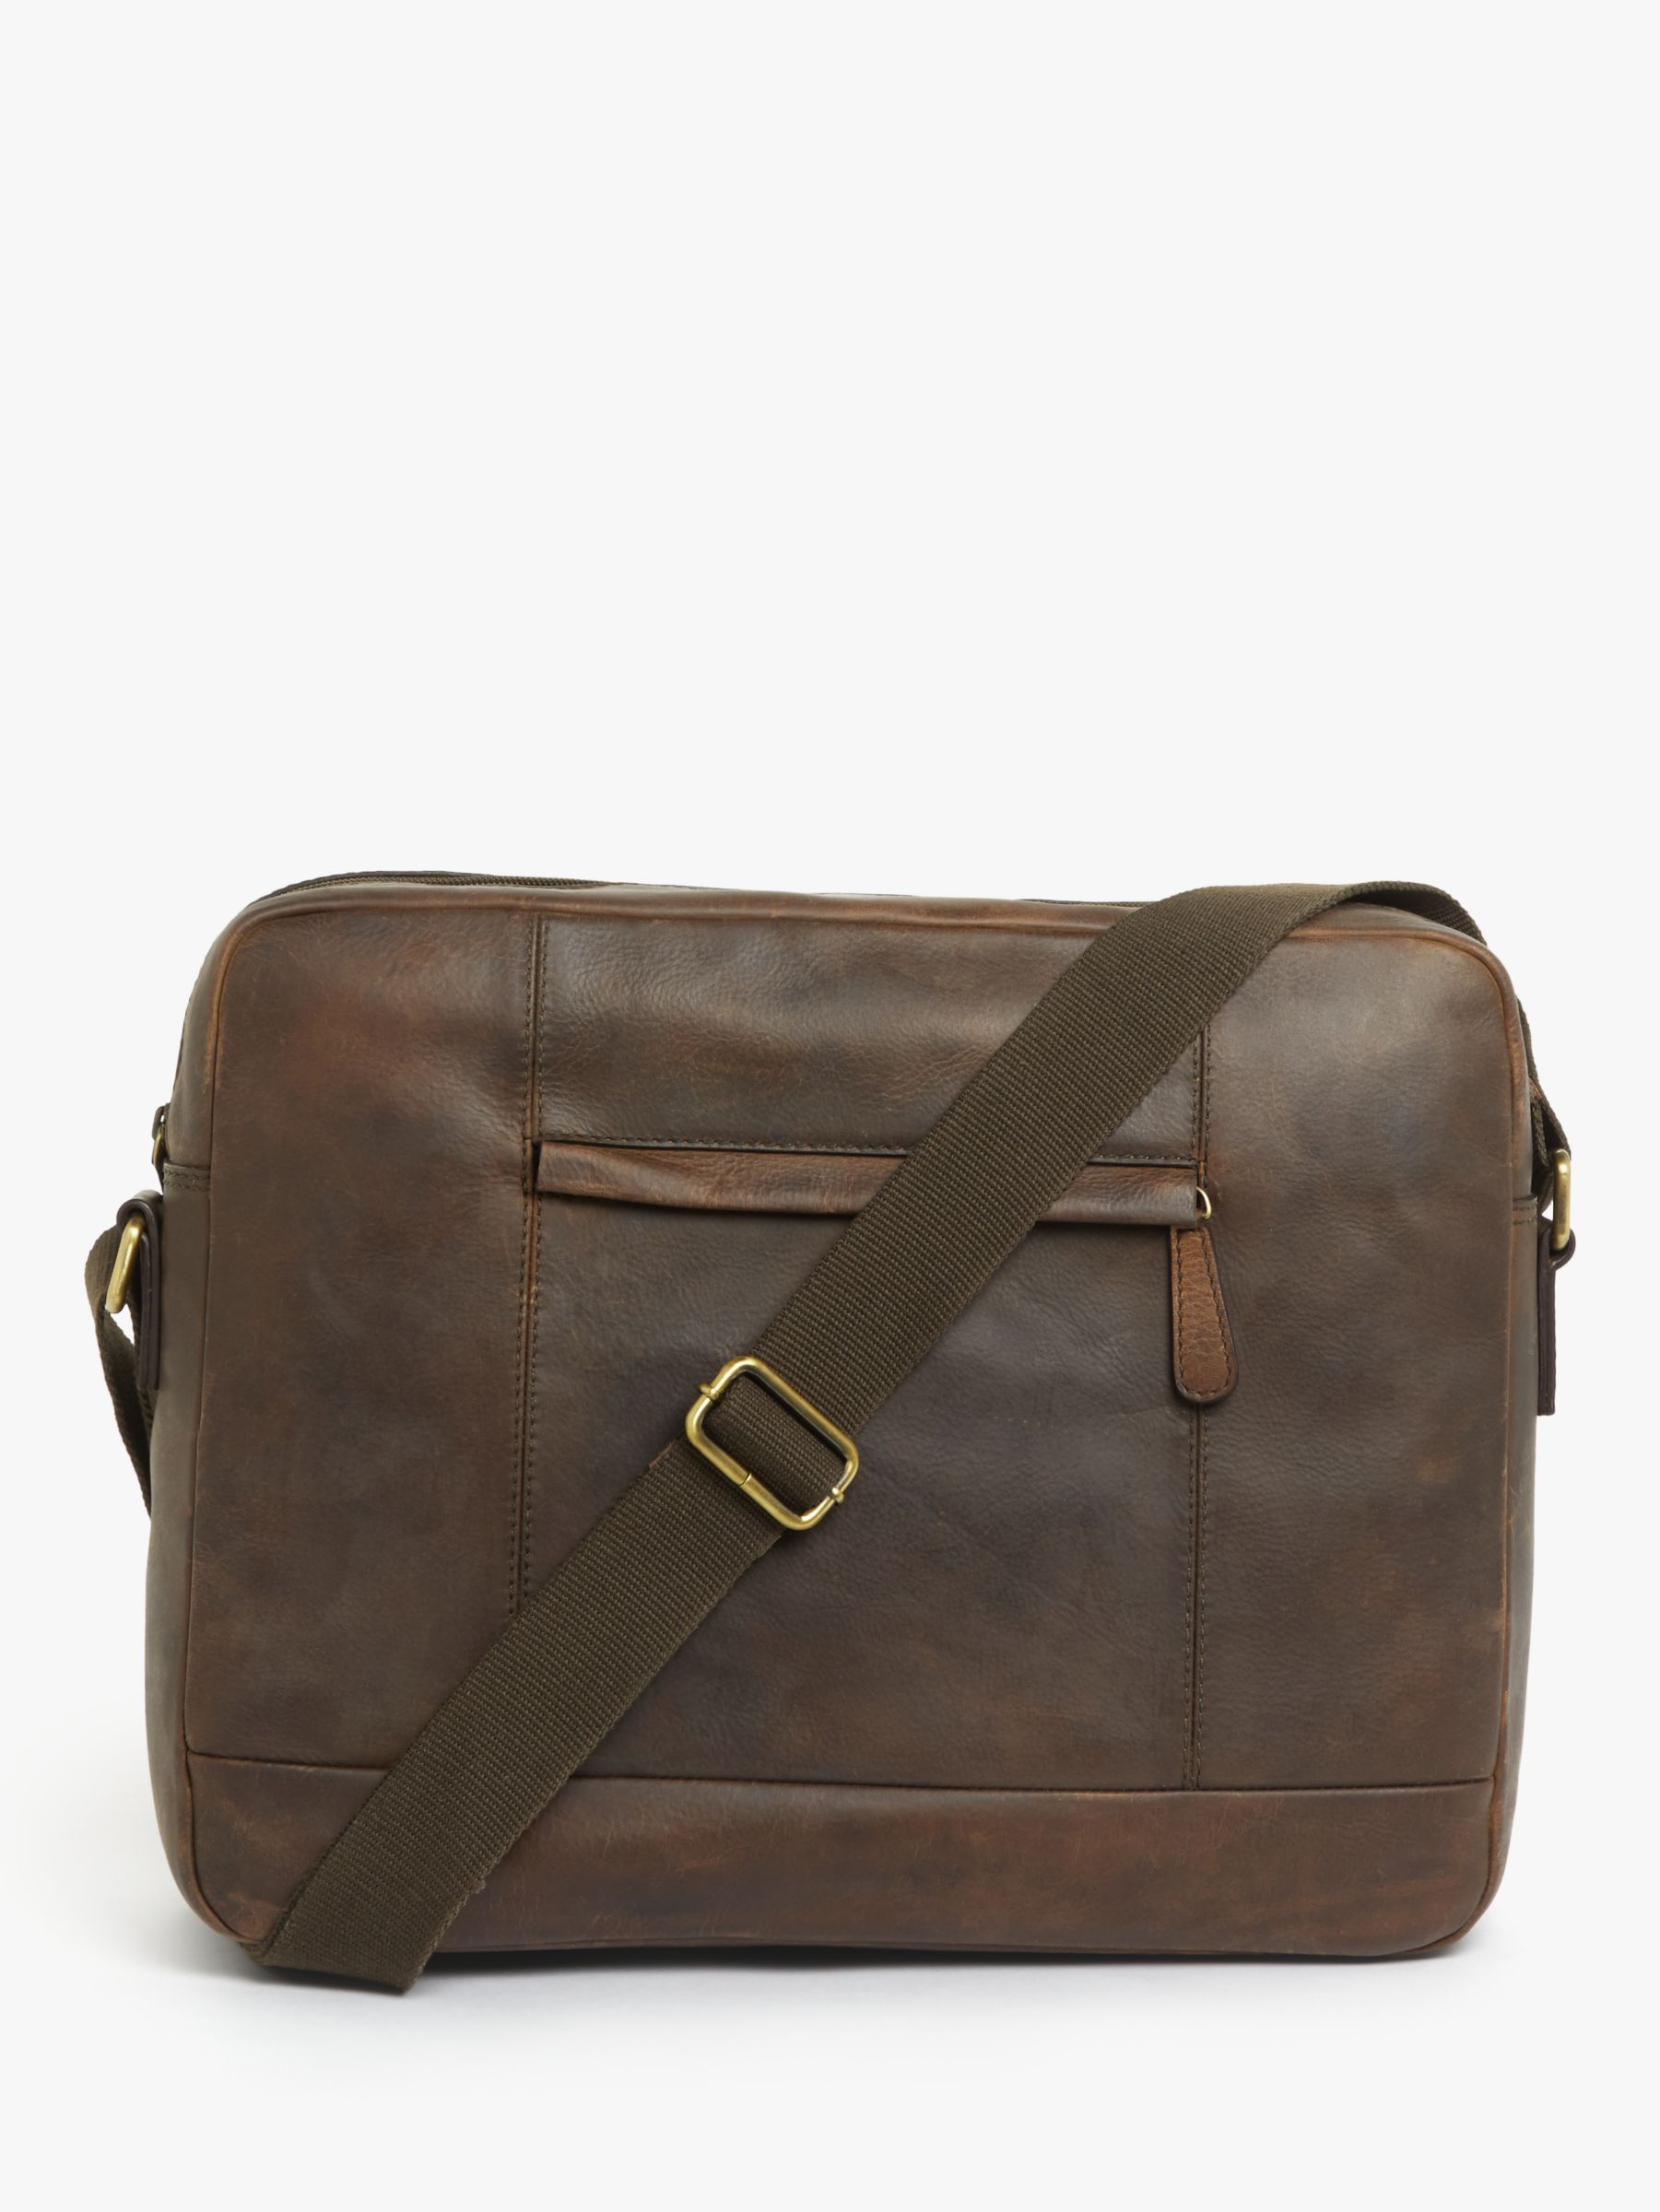 80s Oxblood Brown Leather Messenger Bag. John Lewis Soft 